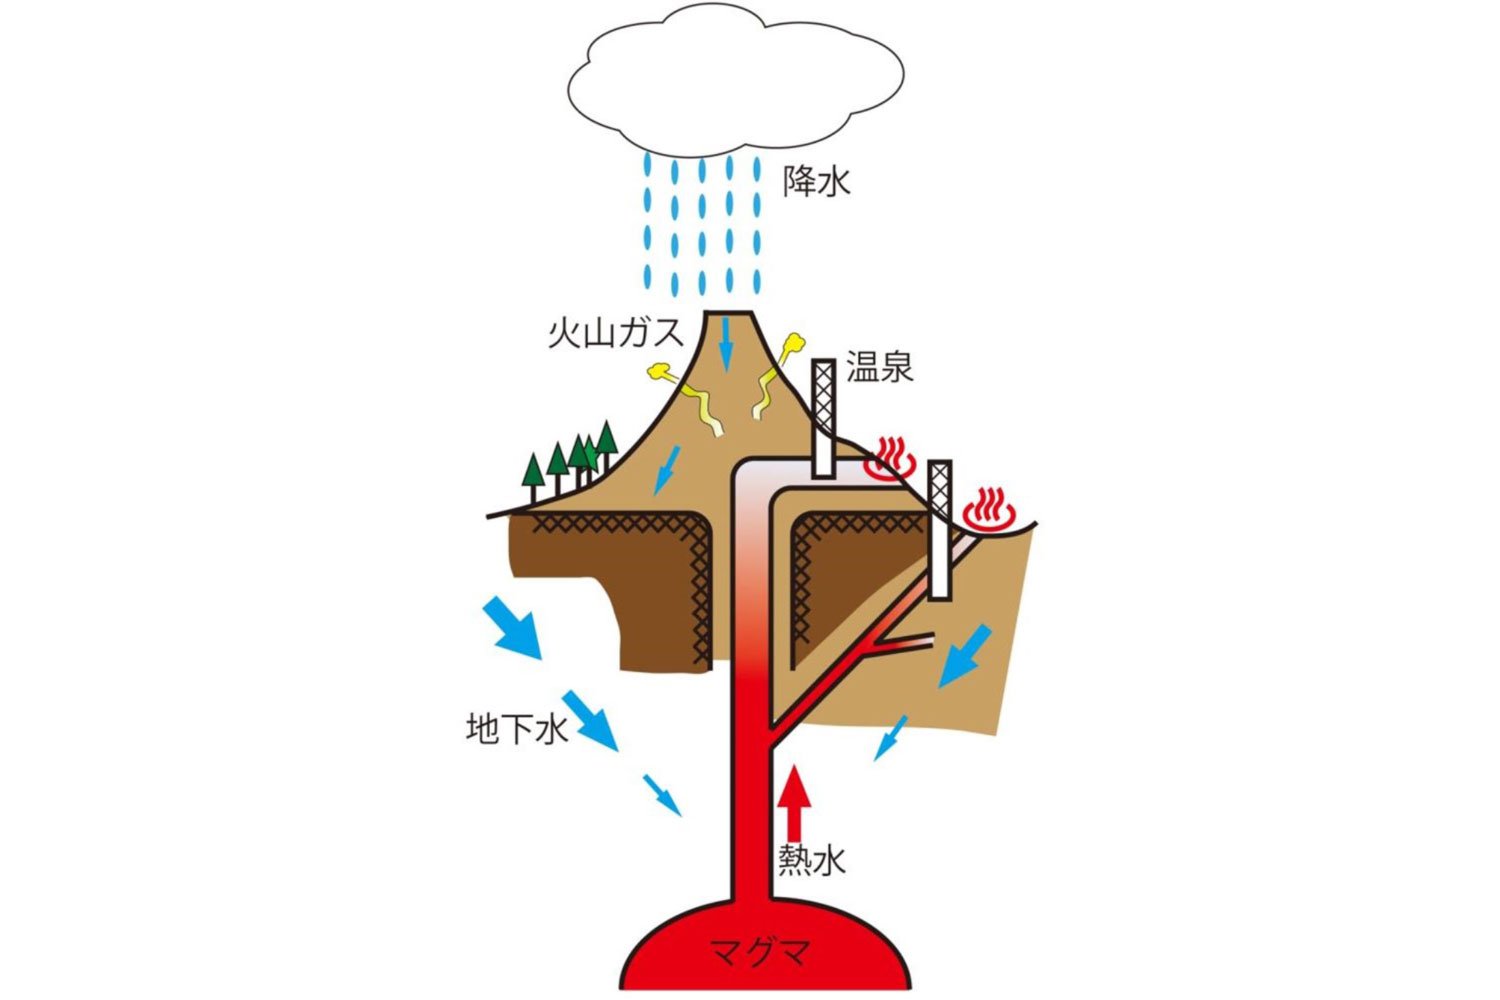 火山性温泉。代表的な泉質はナトリウム-塩化物泉。マグマがお湯の源だ。